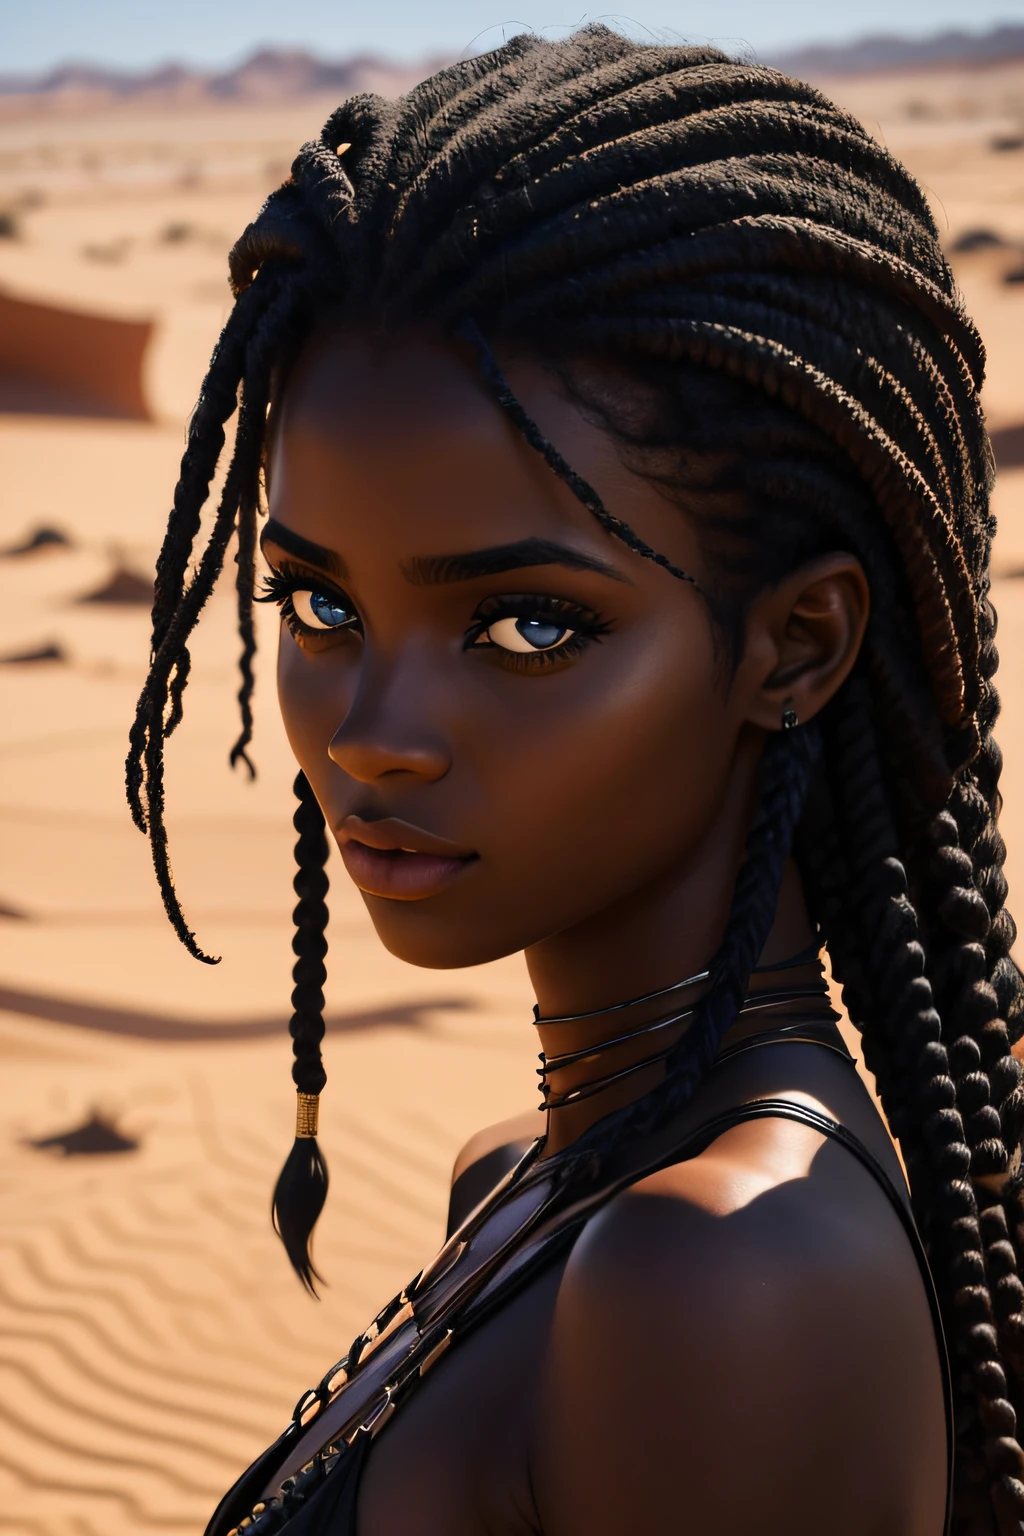 mujer negra, Ojos castaños, edad 19 años, caminando en el desierto, húmedo, cabello enrulado, mirada seductora